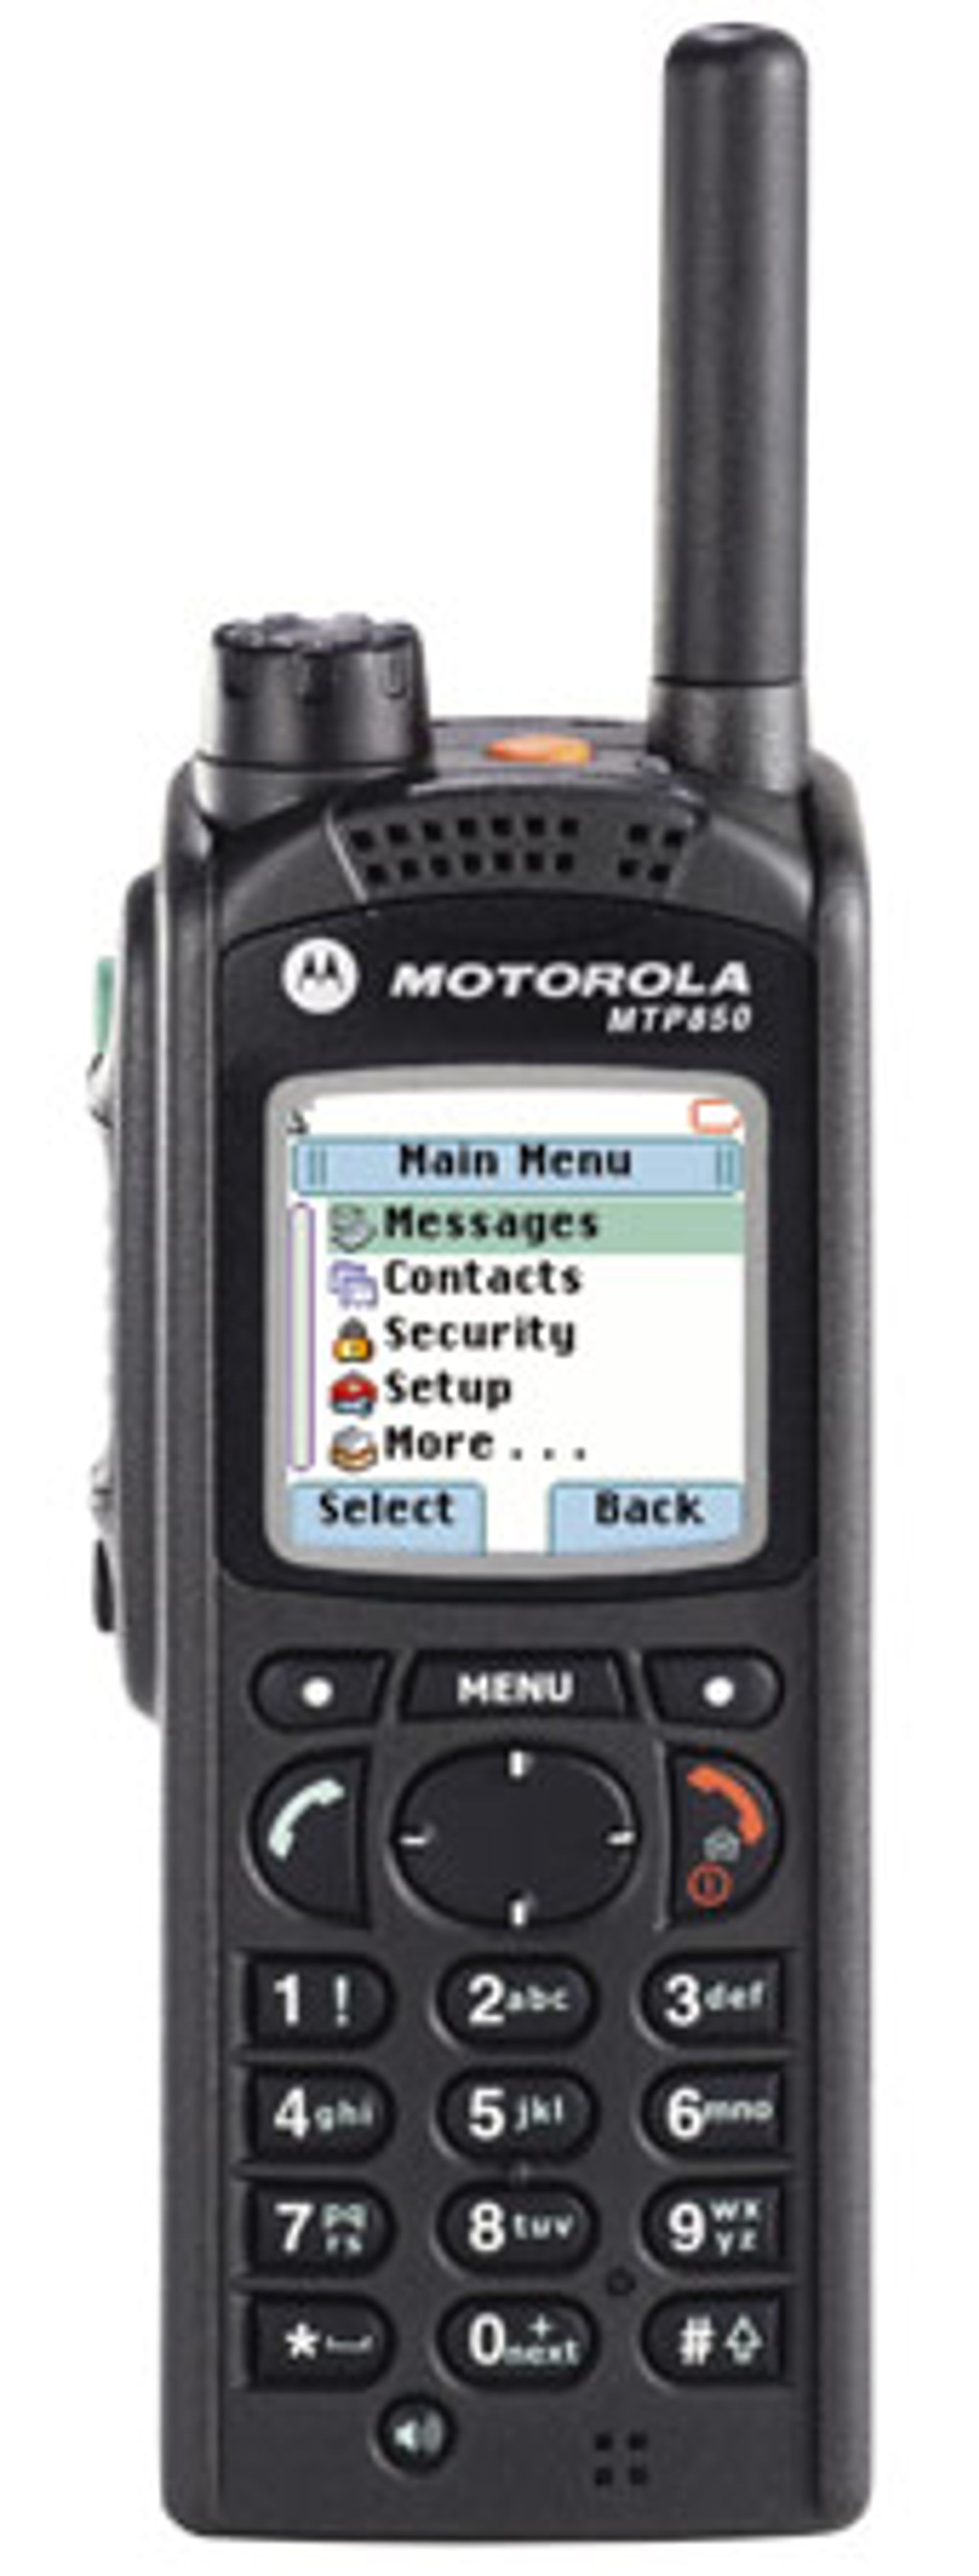 Rykter om Ericsson-oppkjøp av Motorola